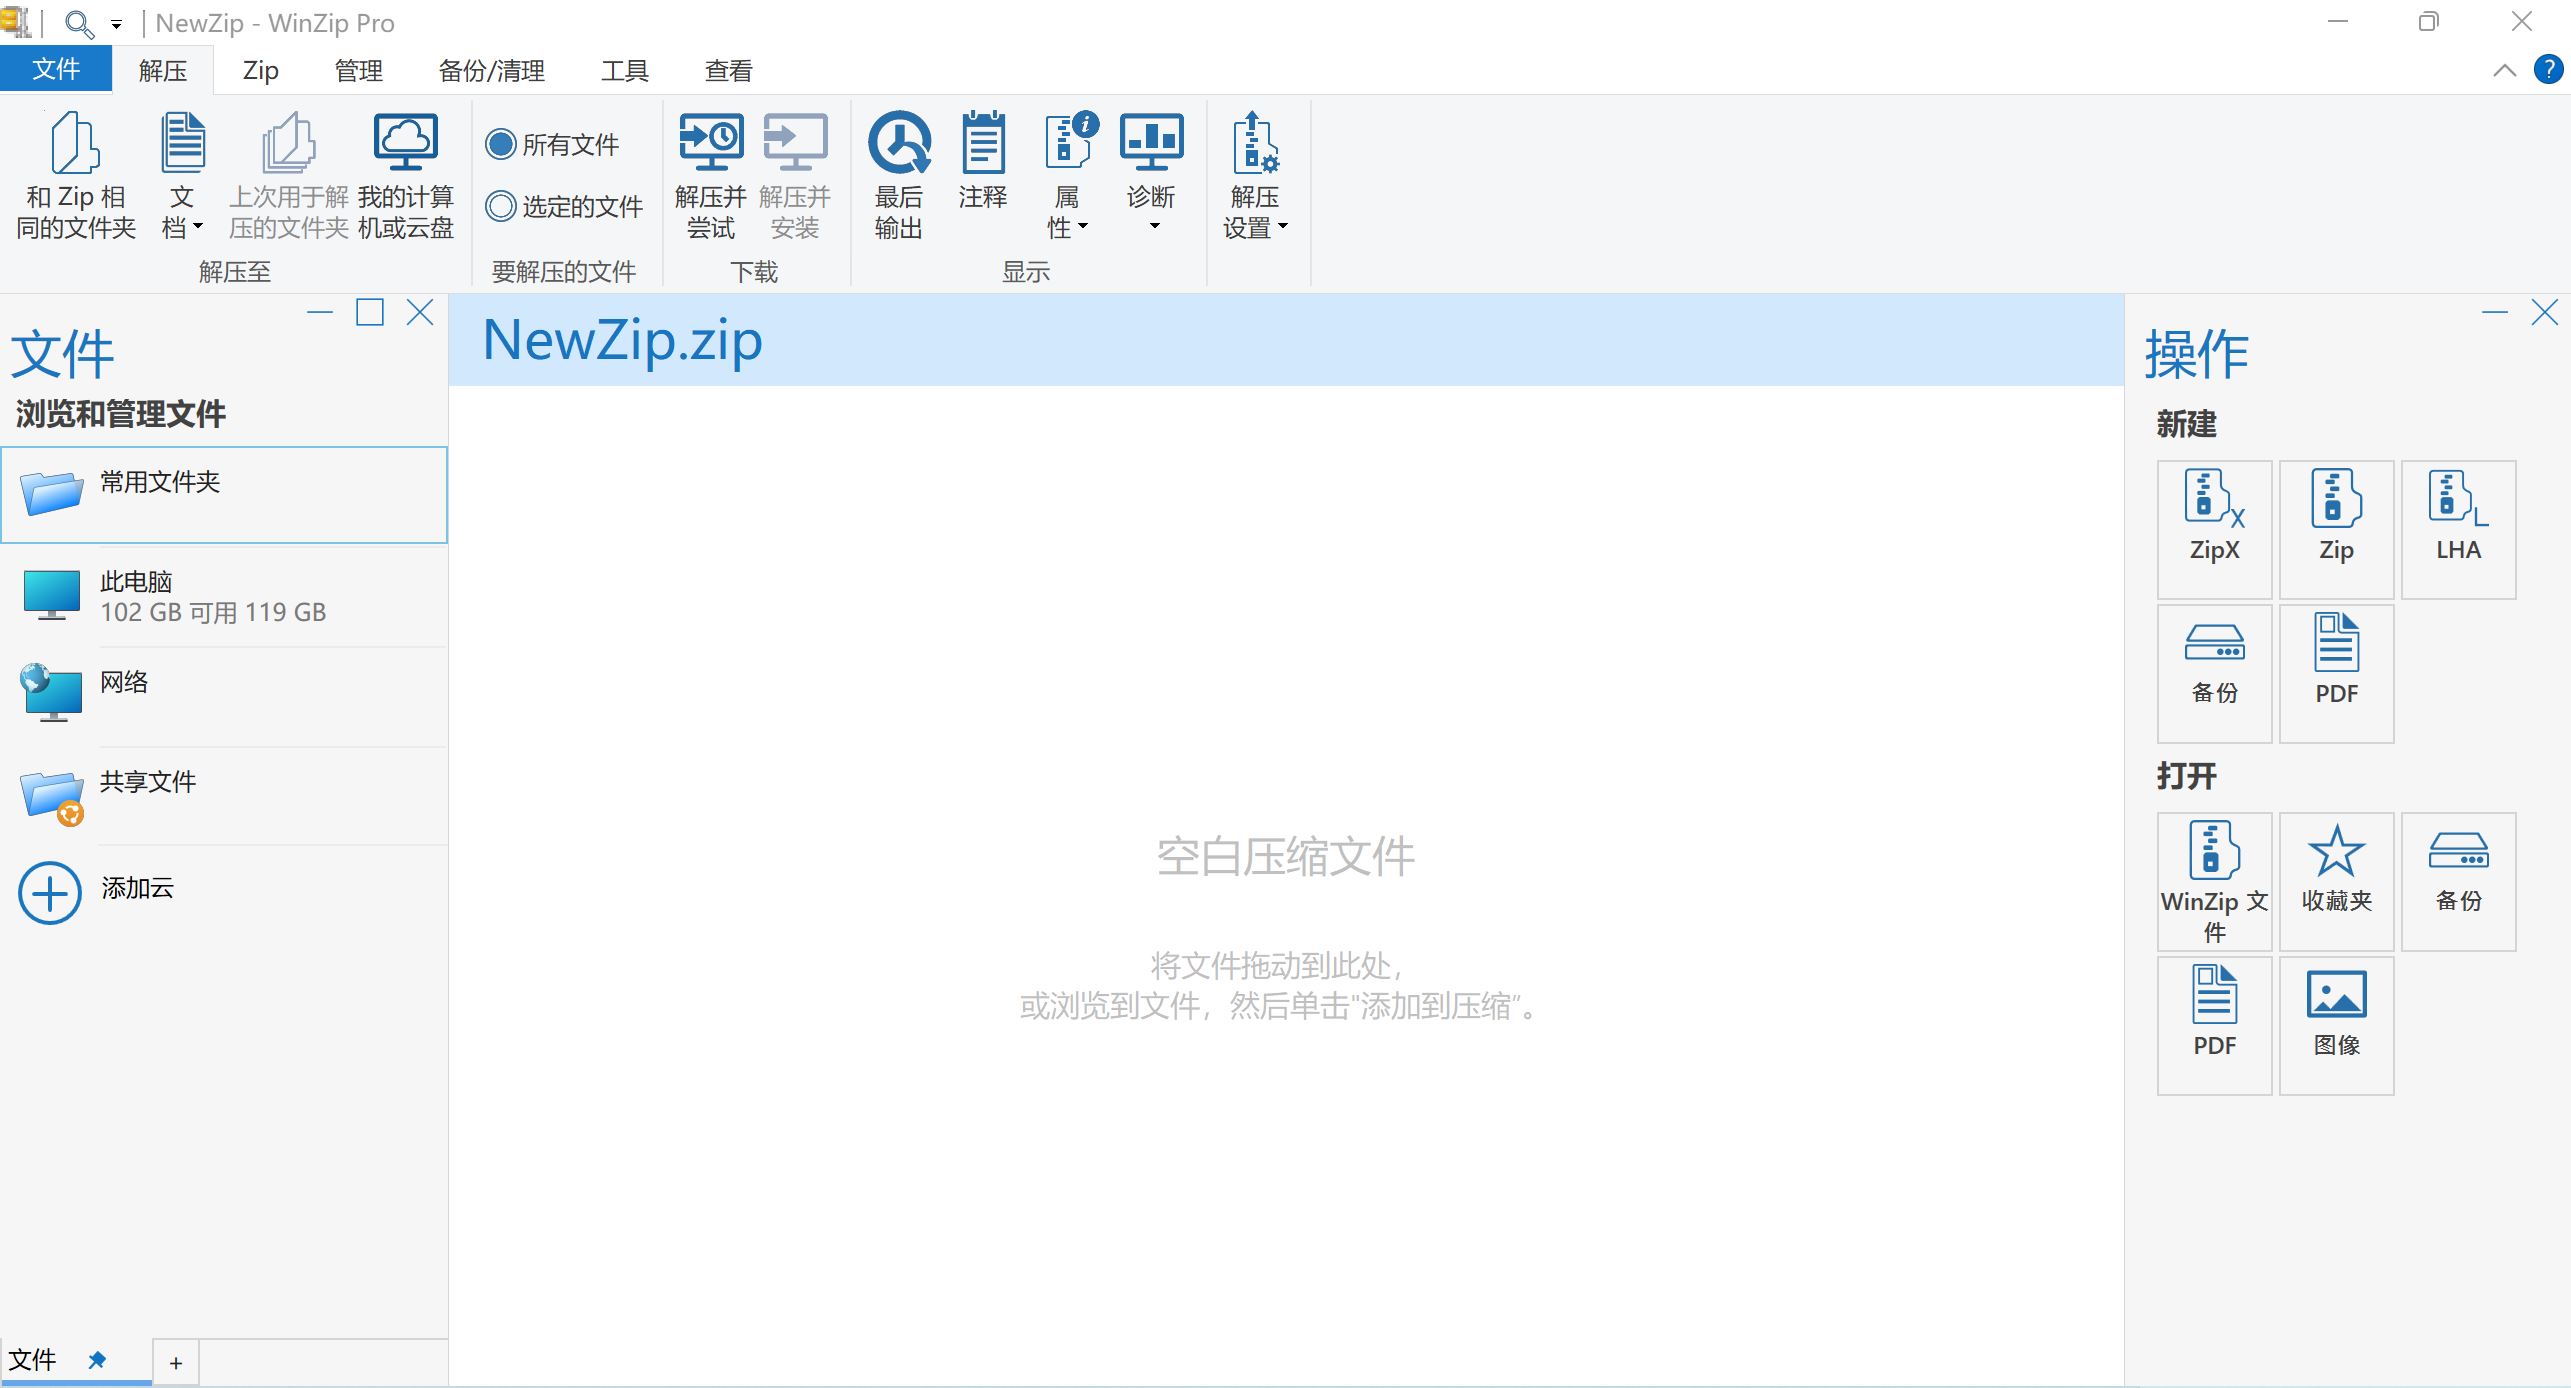 老牌压缩软件 WinZip Pro 27.0 Build 15240